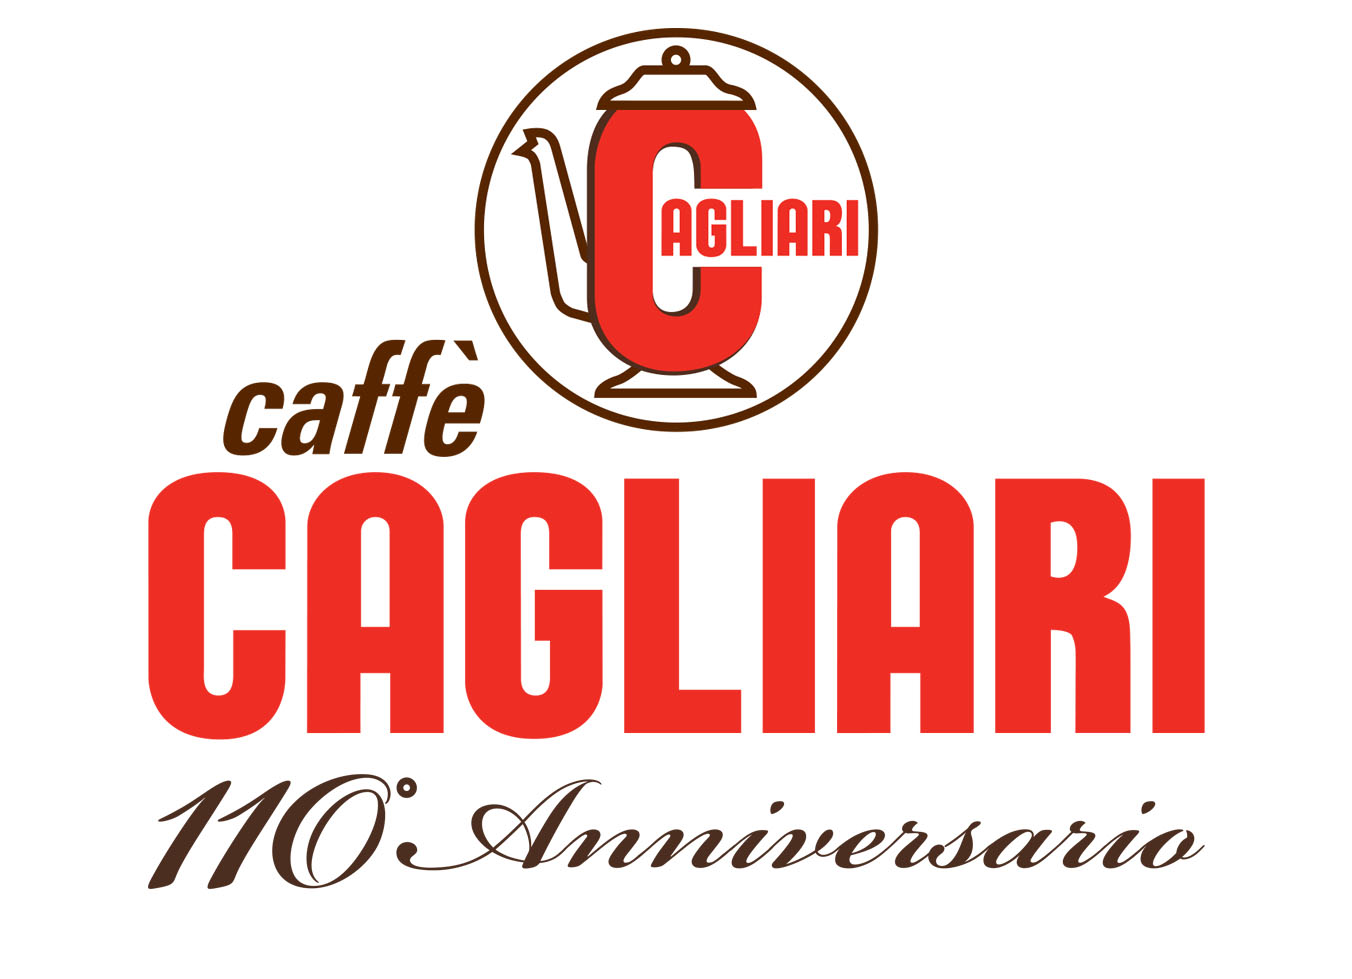 Caffè Cagliari logo 110 anni